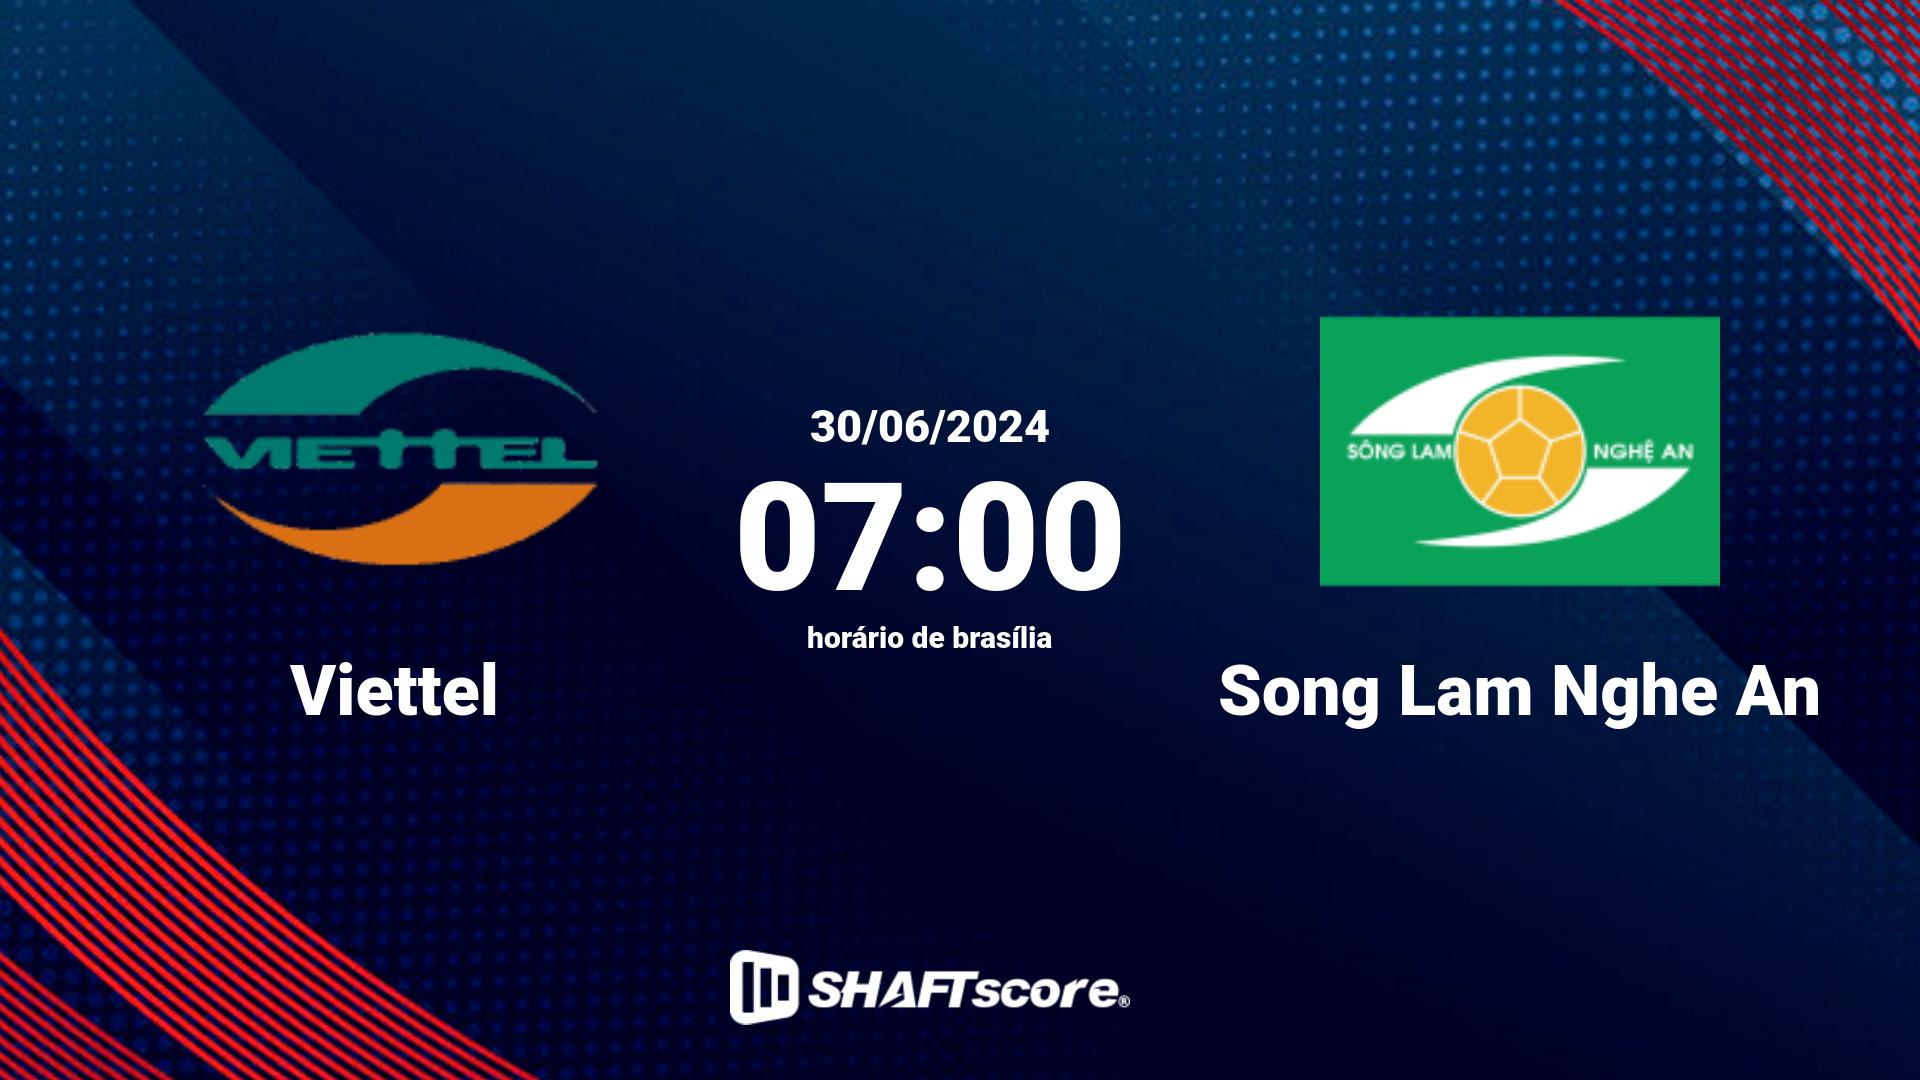 Estatísticas do jogo Viettel vs Song Lam Nghe An 30.06 07:00